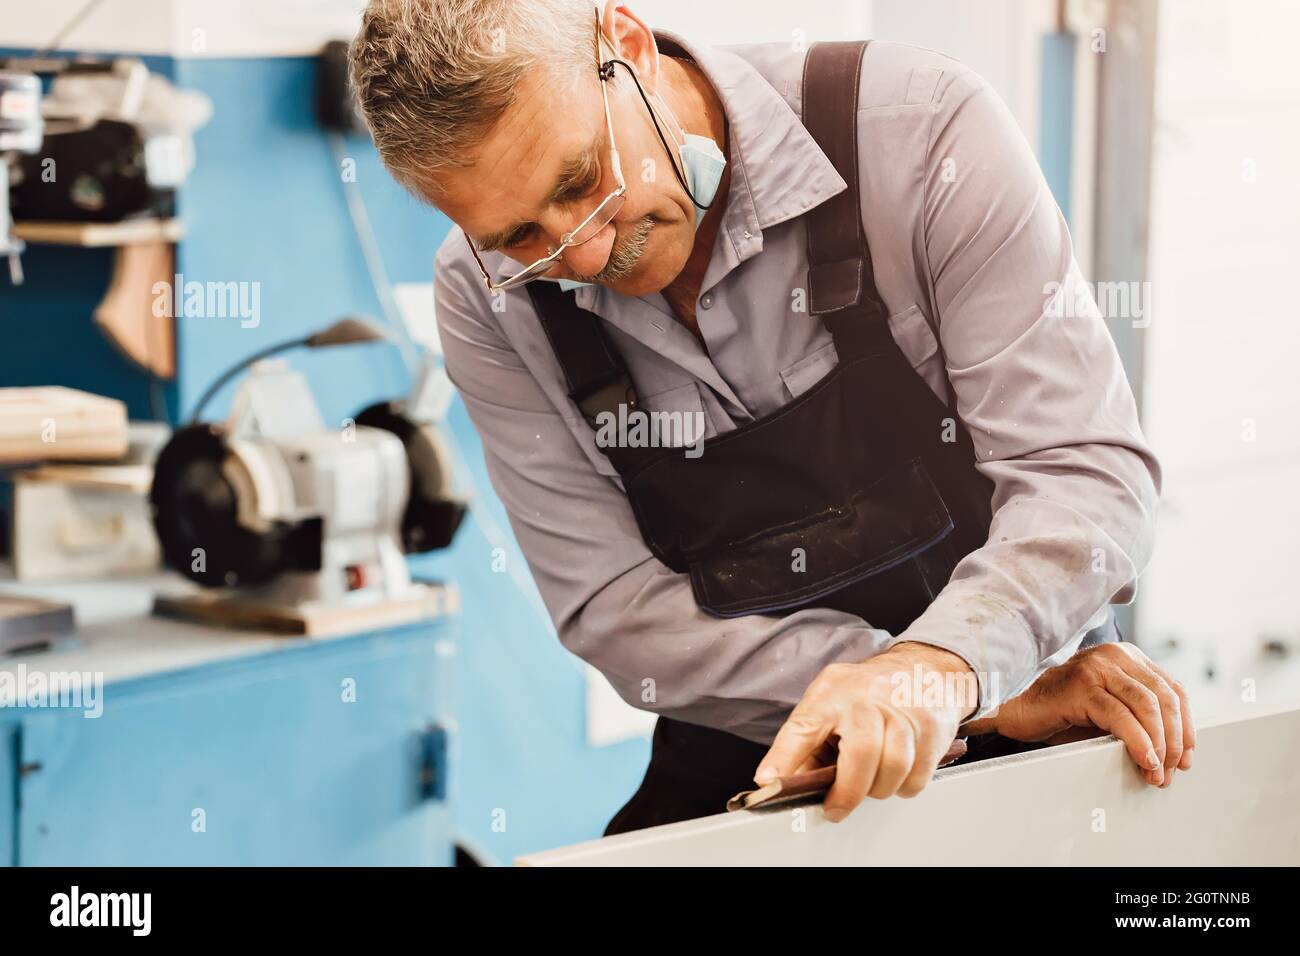 Porträt eines älteren Zimmermanns oder Zimmermanns in Overalls, der in einer Tischlerwerkstatt mit Holzbrettern arbeitet. Sägen von Holz. Stockfoto